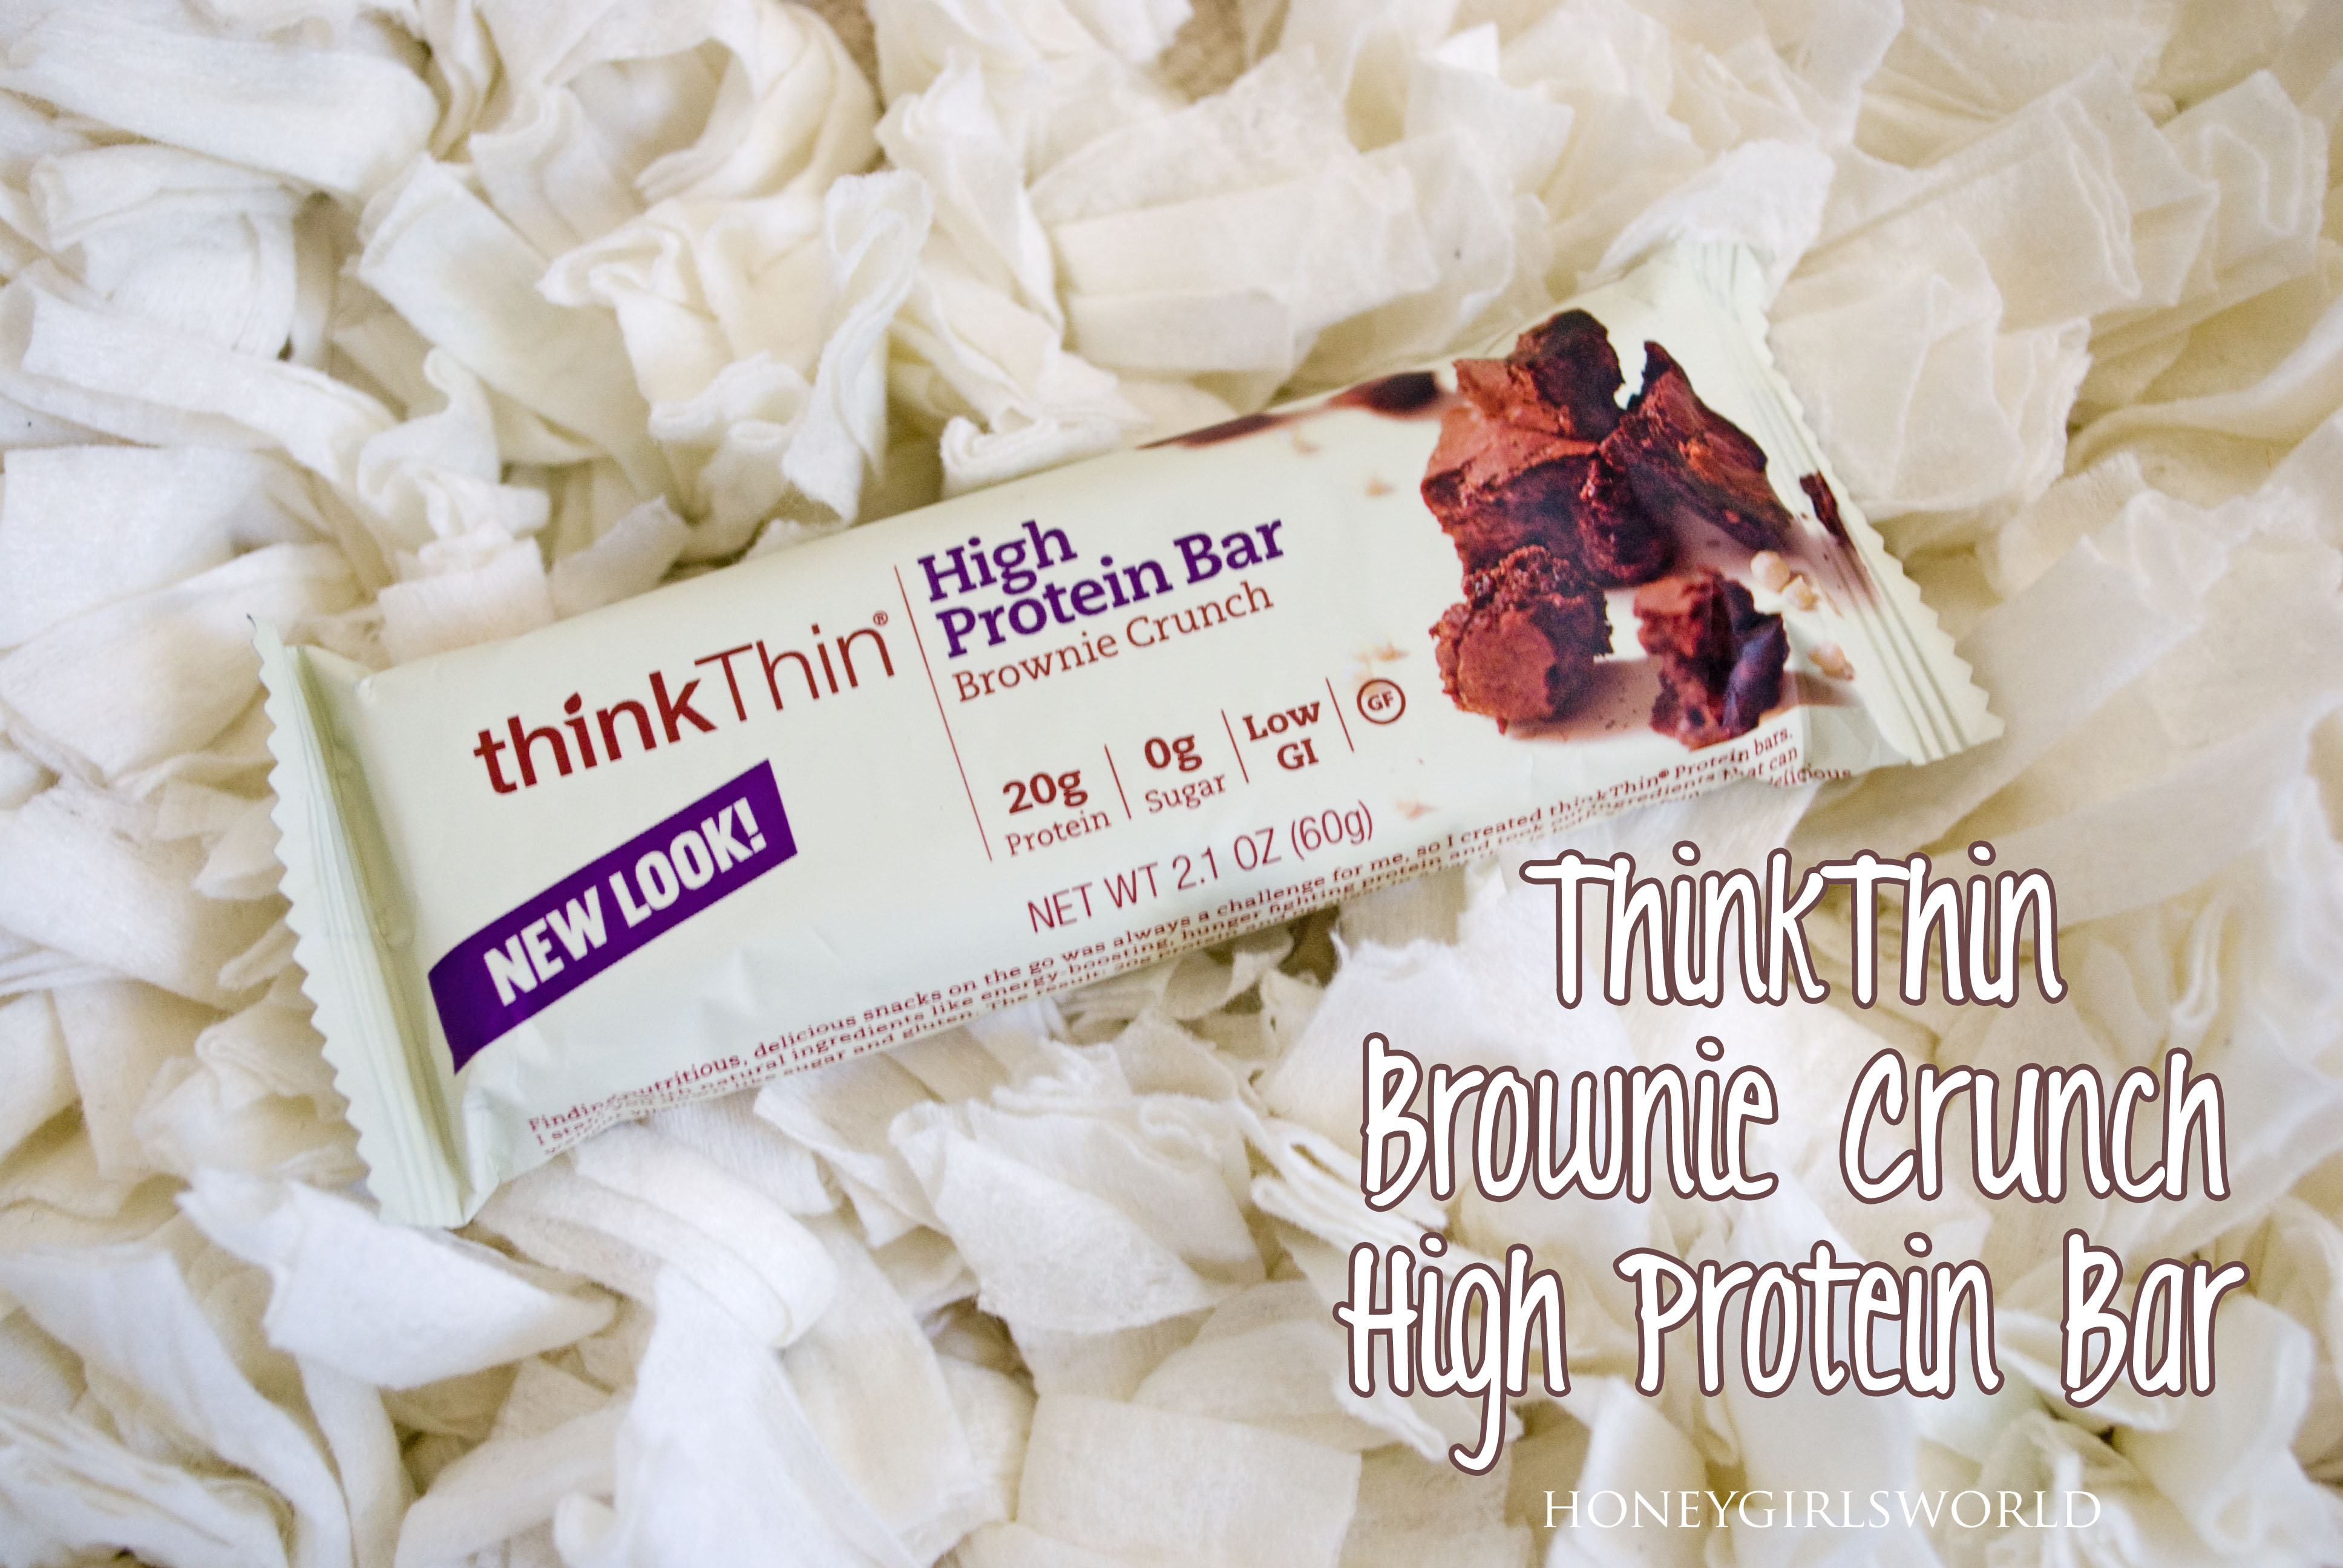 thinkThin brownie crunch high protein bar